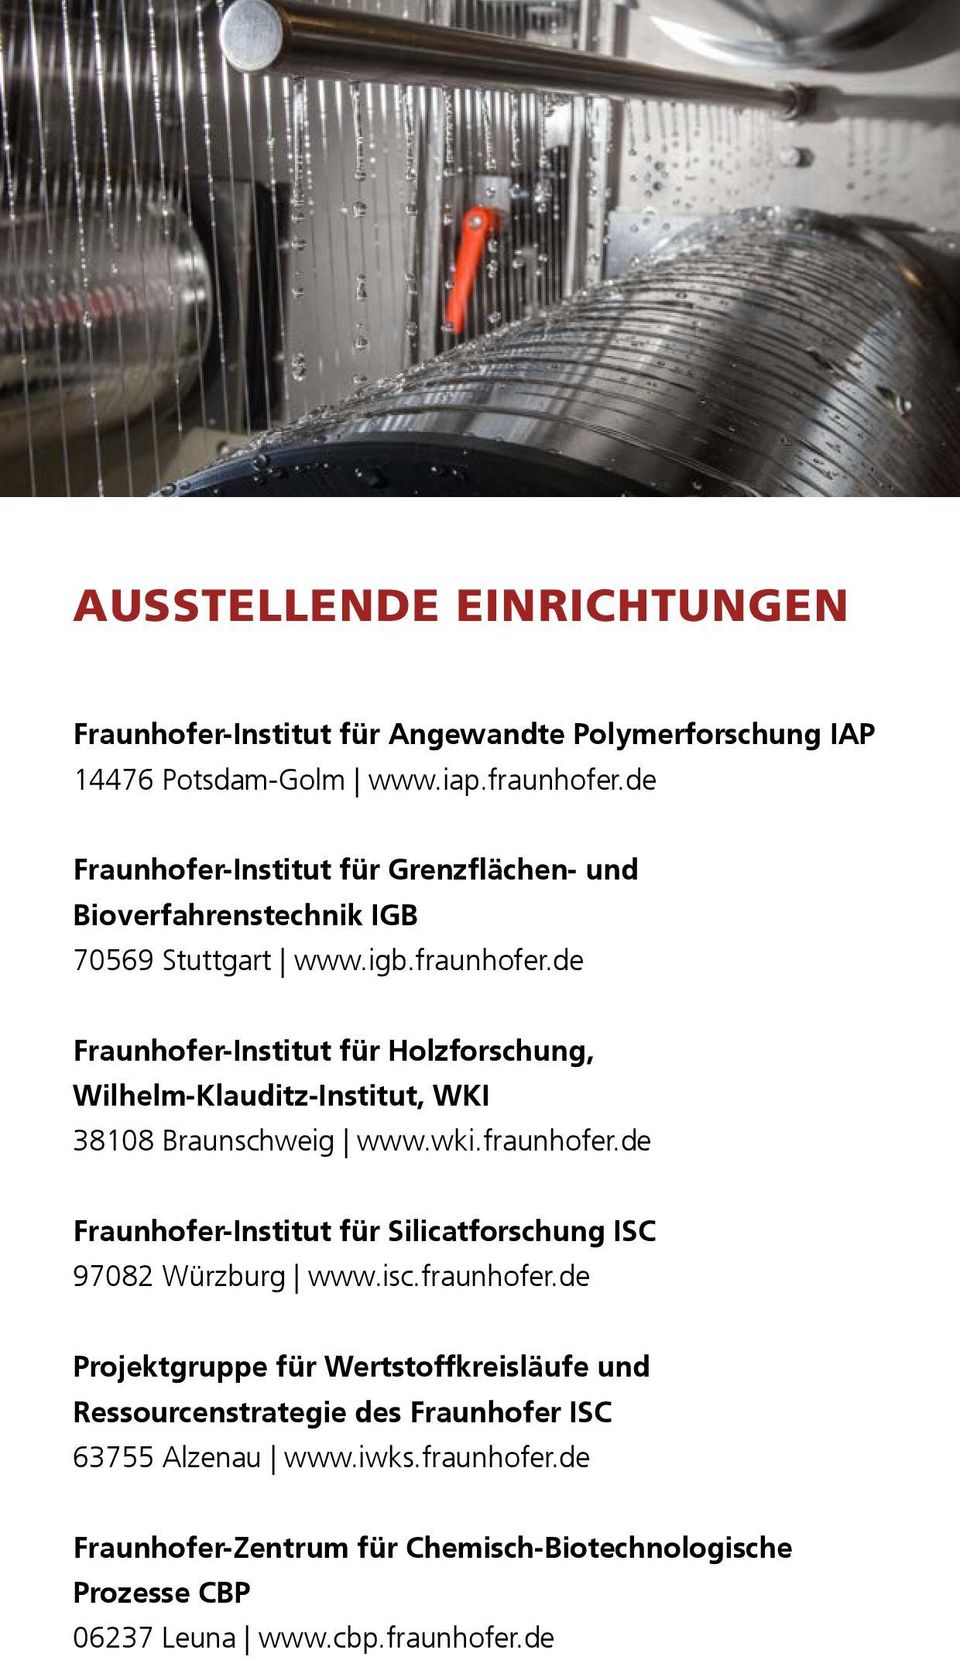 de Fraunhofer-Institut für Holzforschung, Wilhelm-Klauditz-Institut, WKI 38108 Braunschweig www.wki.fraunhofer.